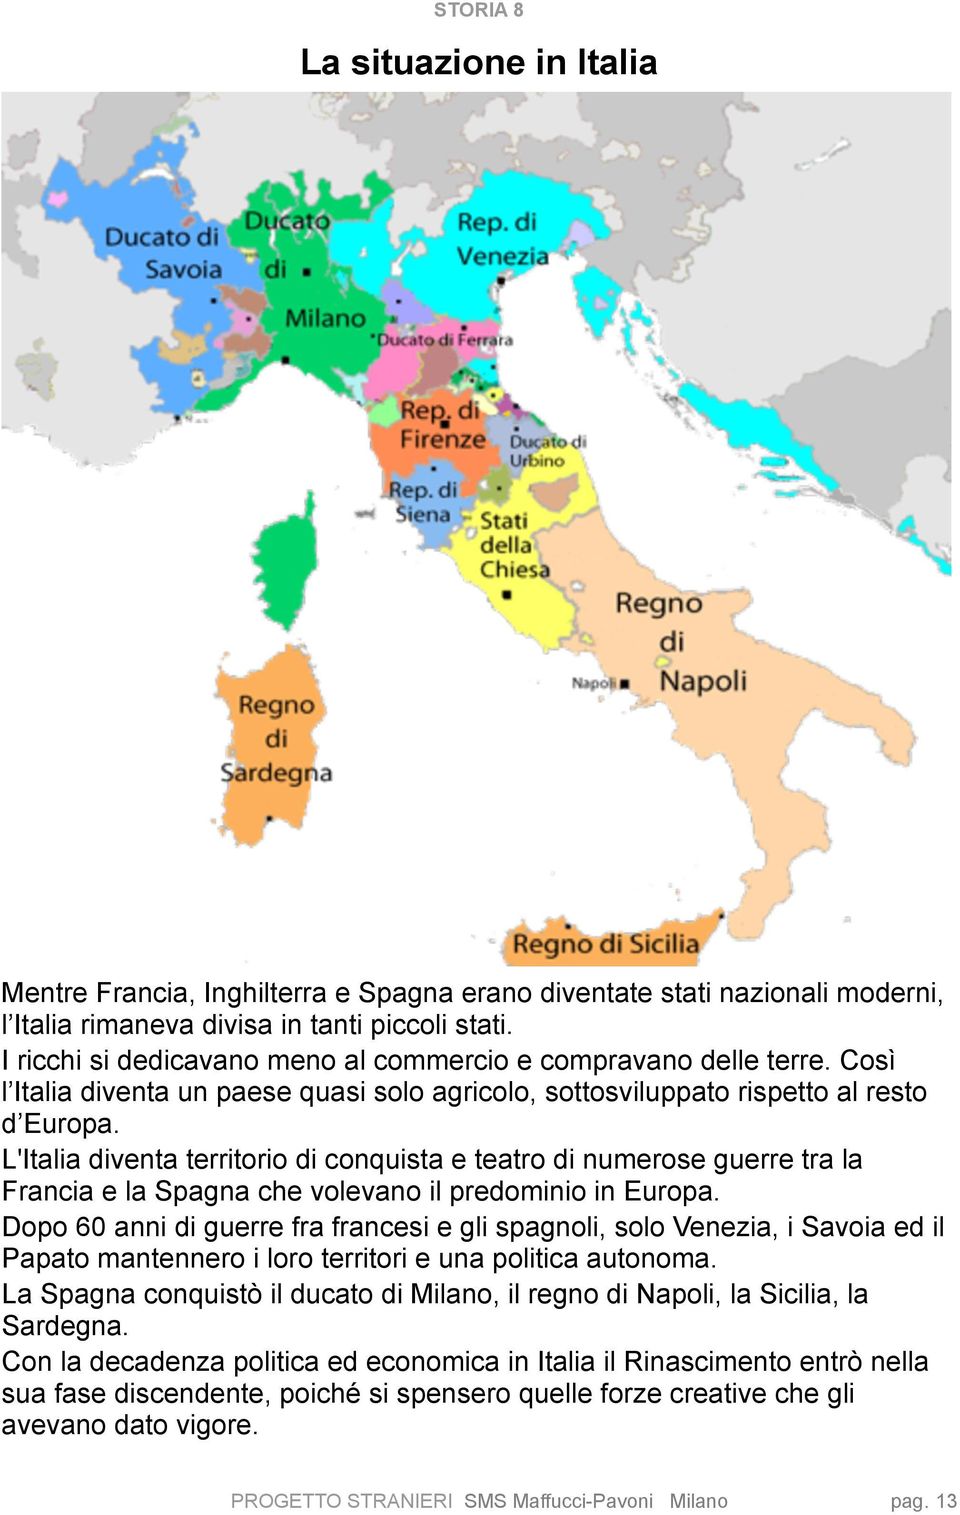 L'Italia diventa territorio di conquista e teatro di numerose guerre tra la Francia e la Spagna che volevano il predominio in Europa.